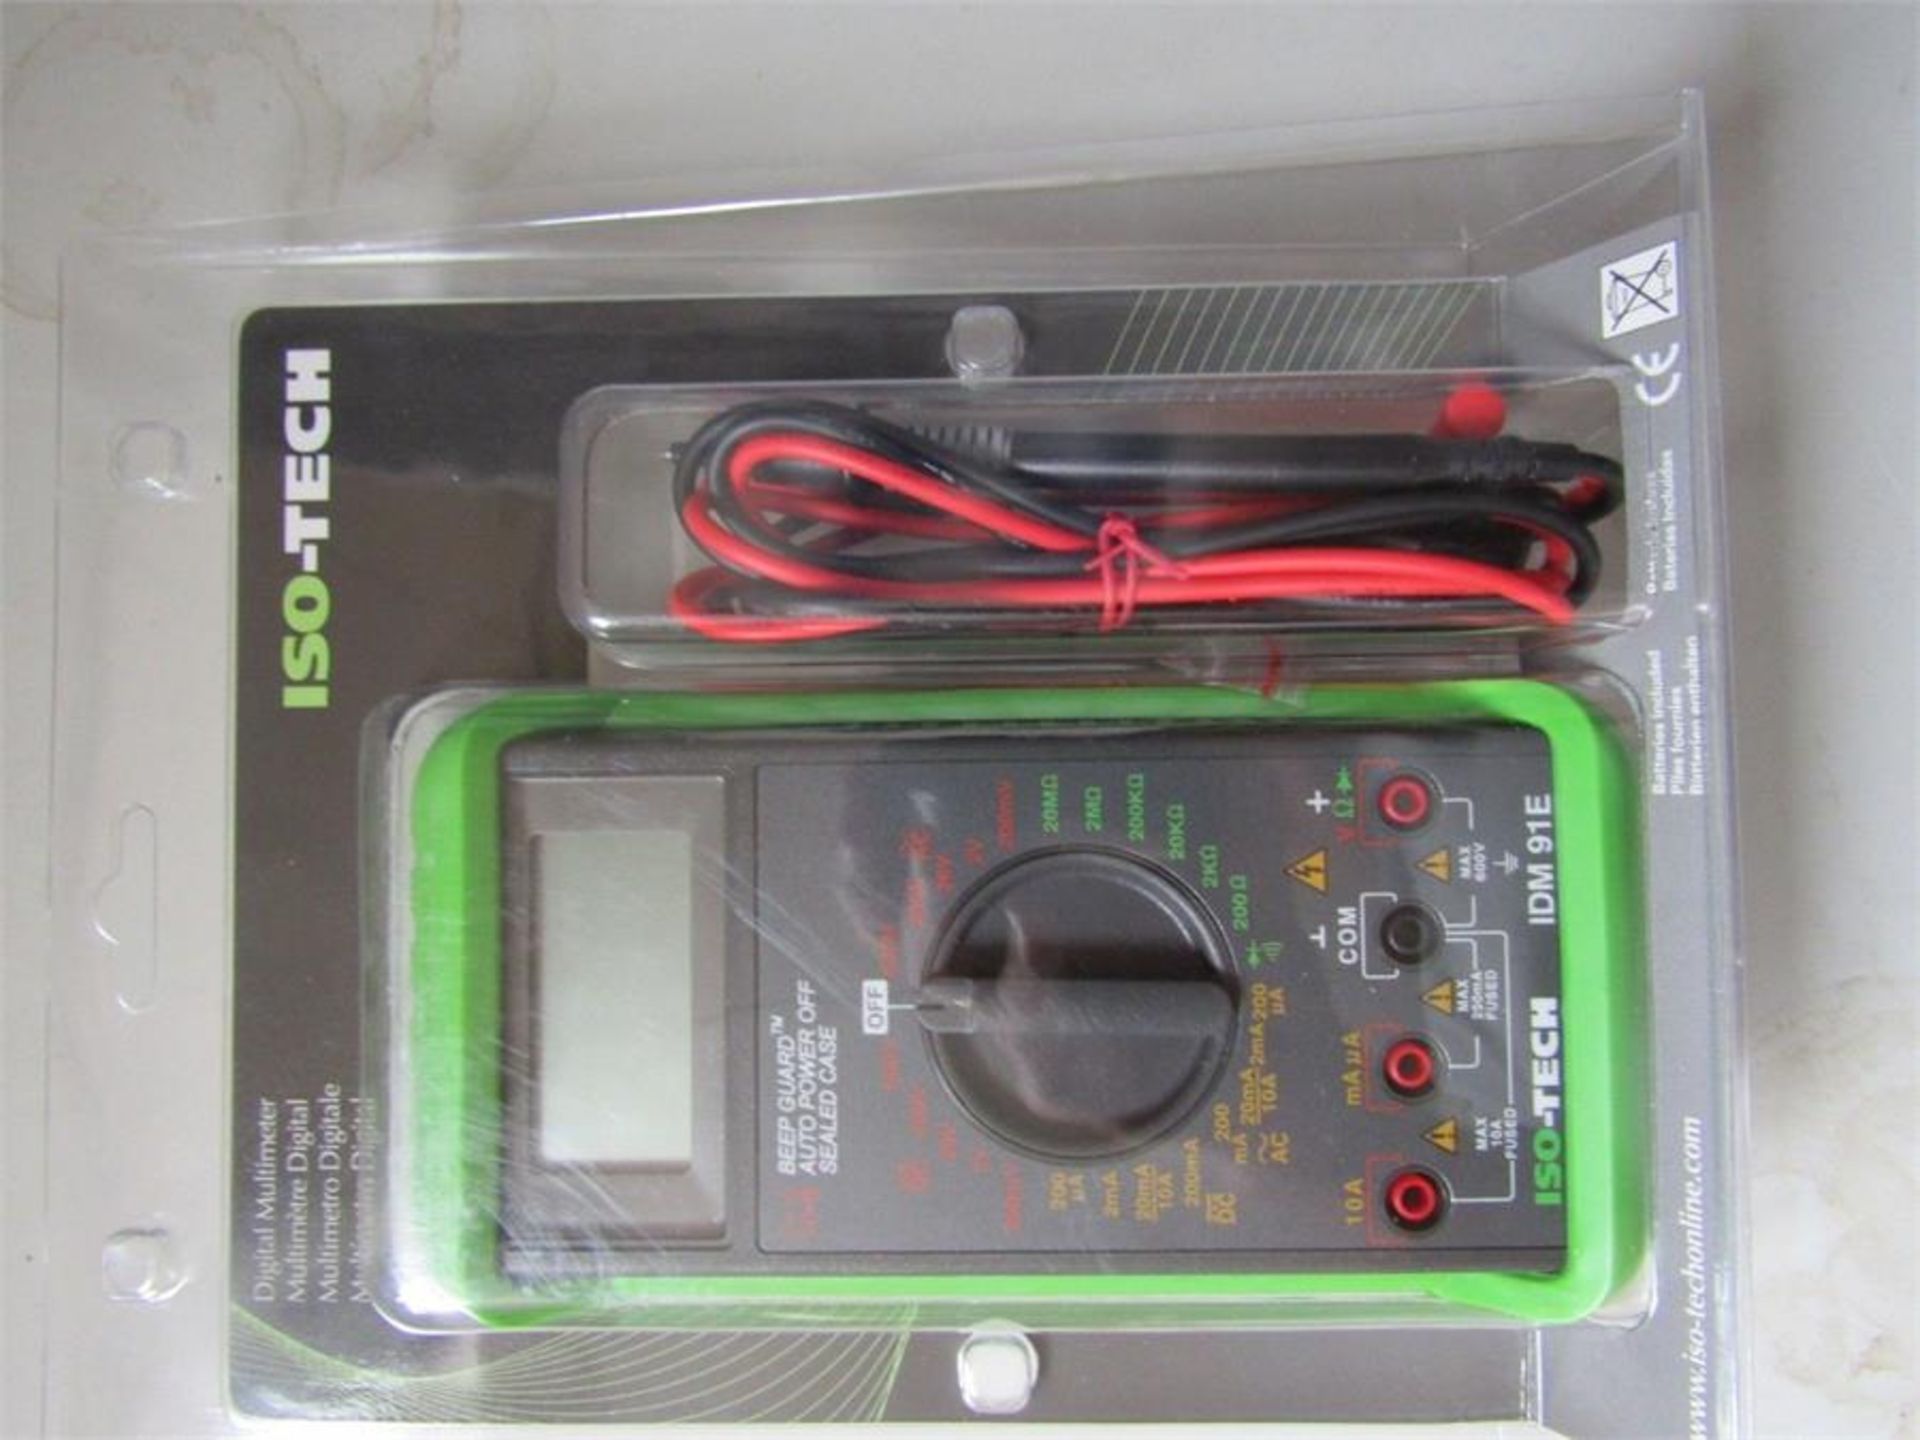 ISO-TECH IDM91E Handheld Digital Multimeter, 10A 600V - T&M 6974049